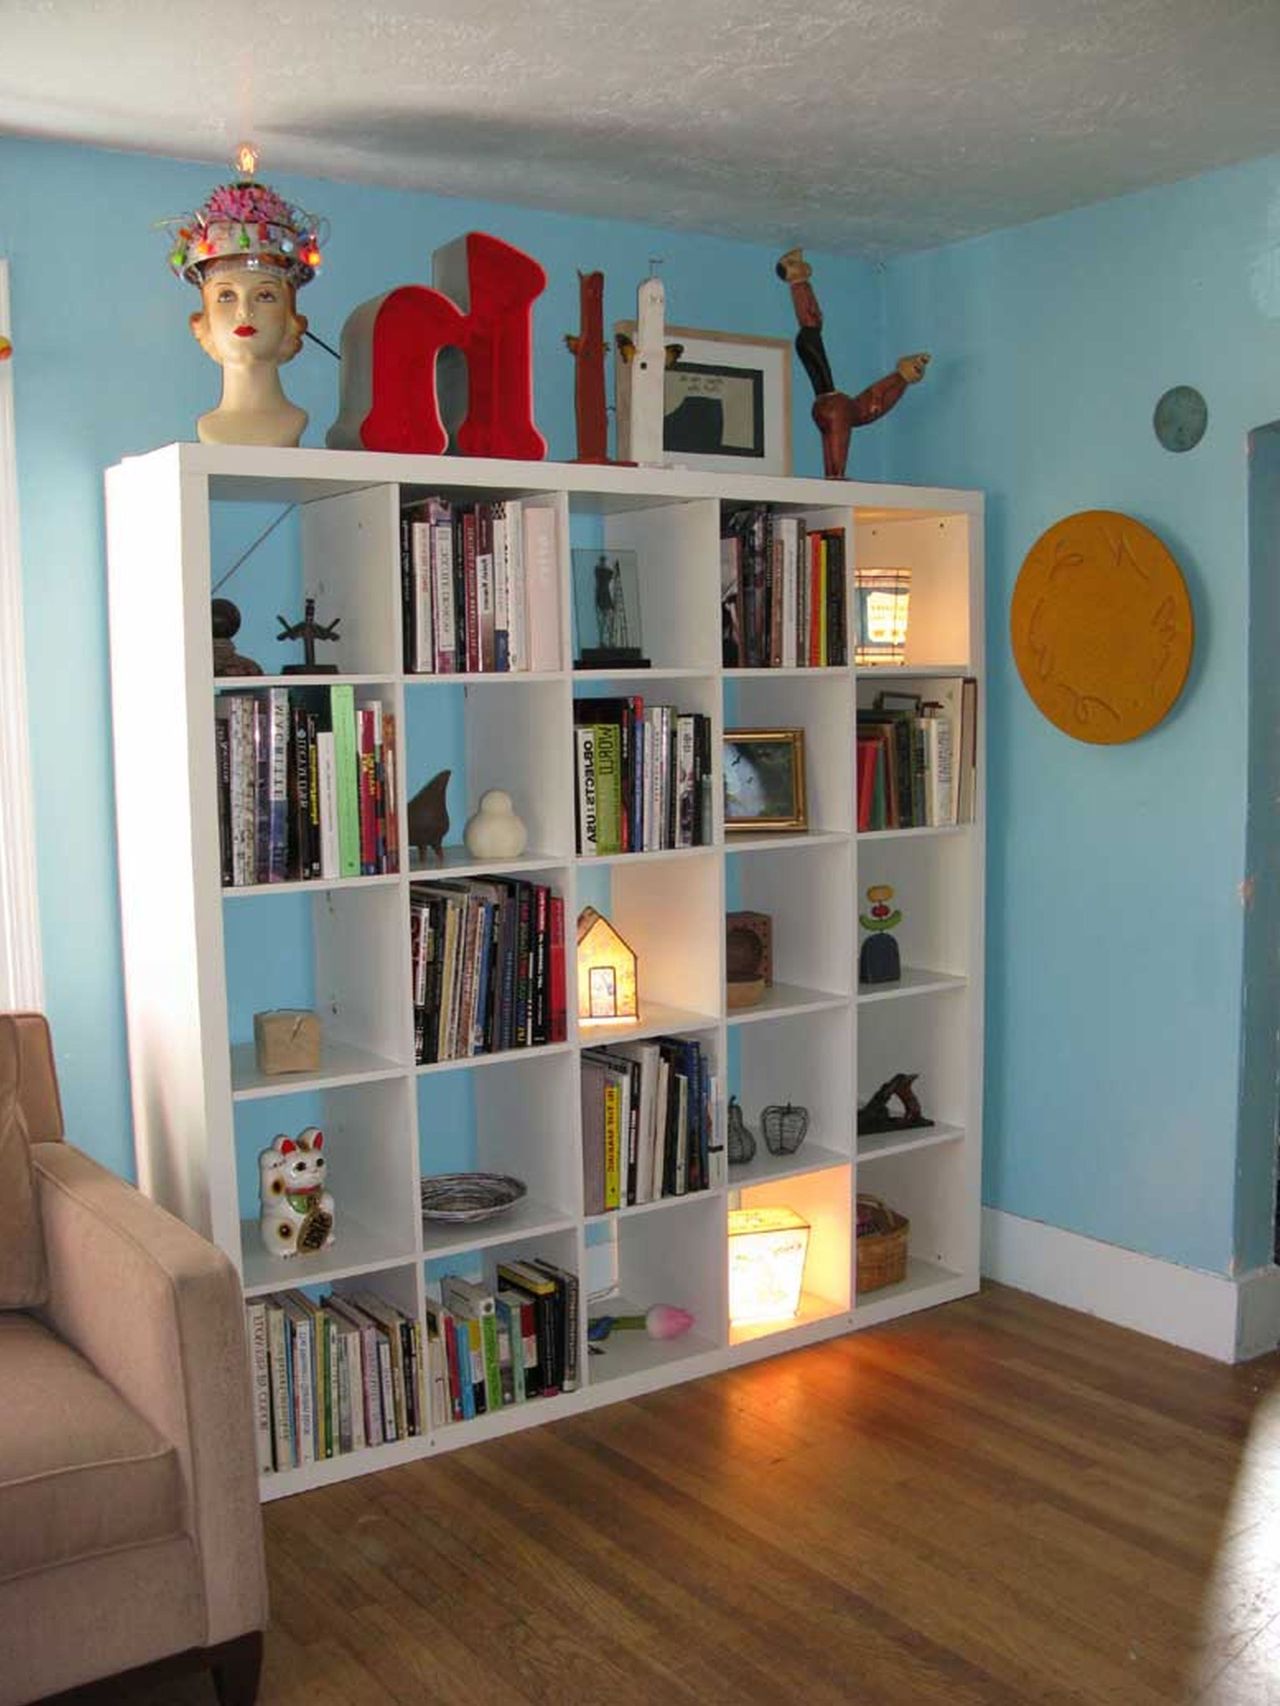 35 Creative Bookcases Design Ideas - Decoration Love